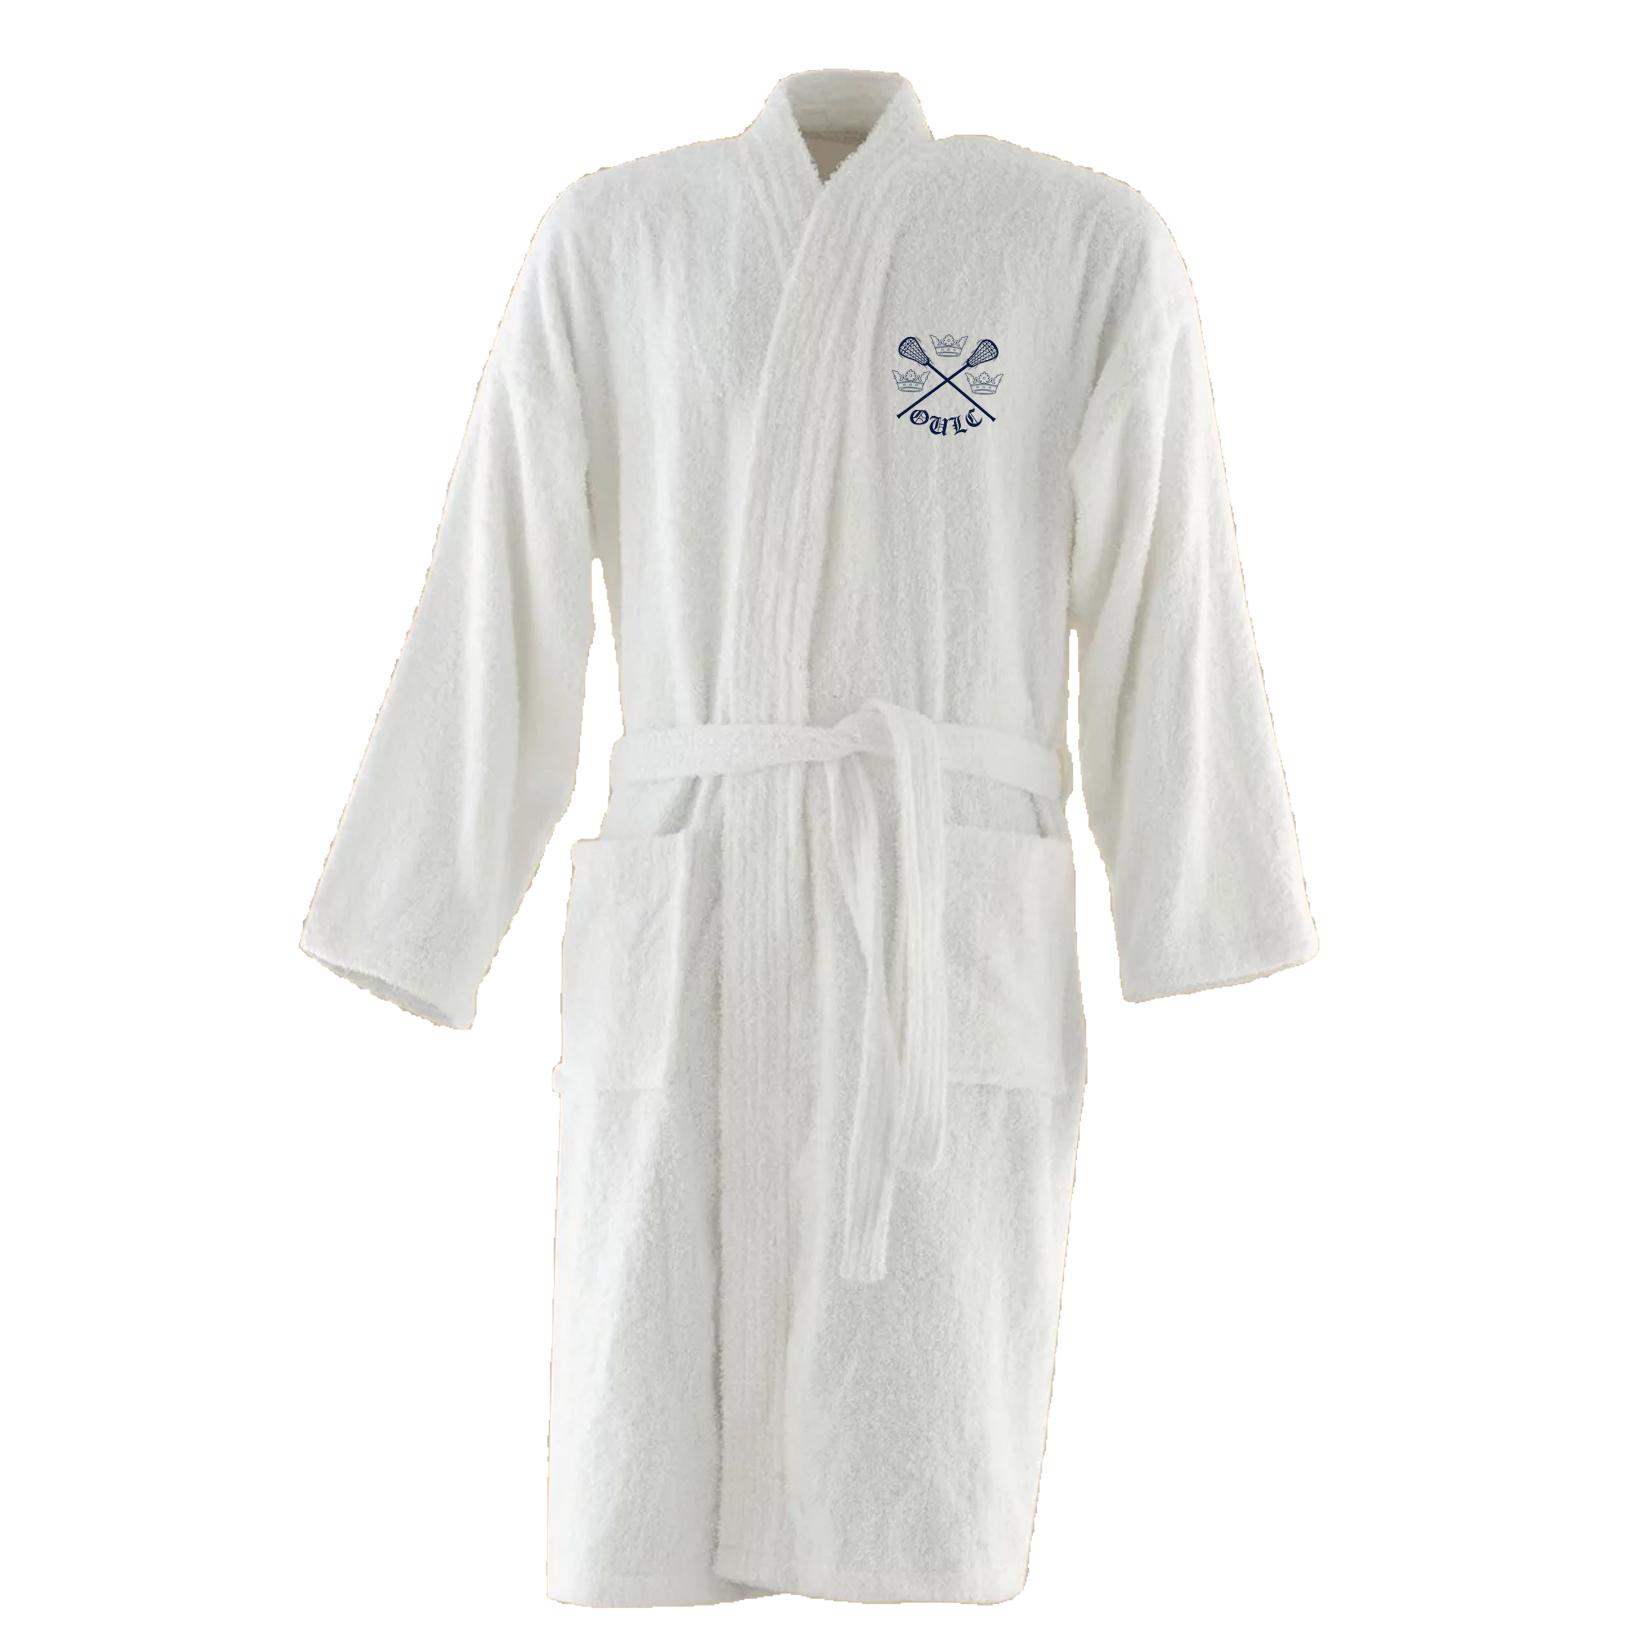 Towel-City Kimono Robe White